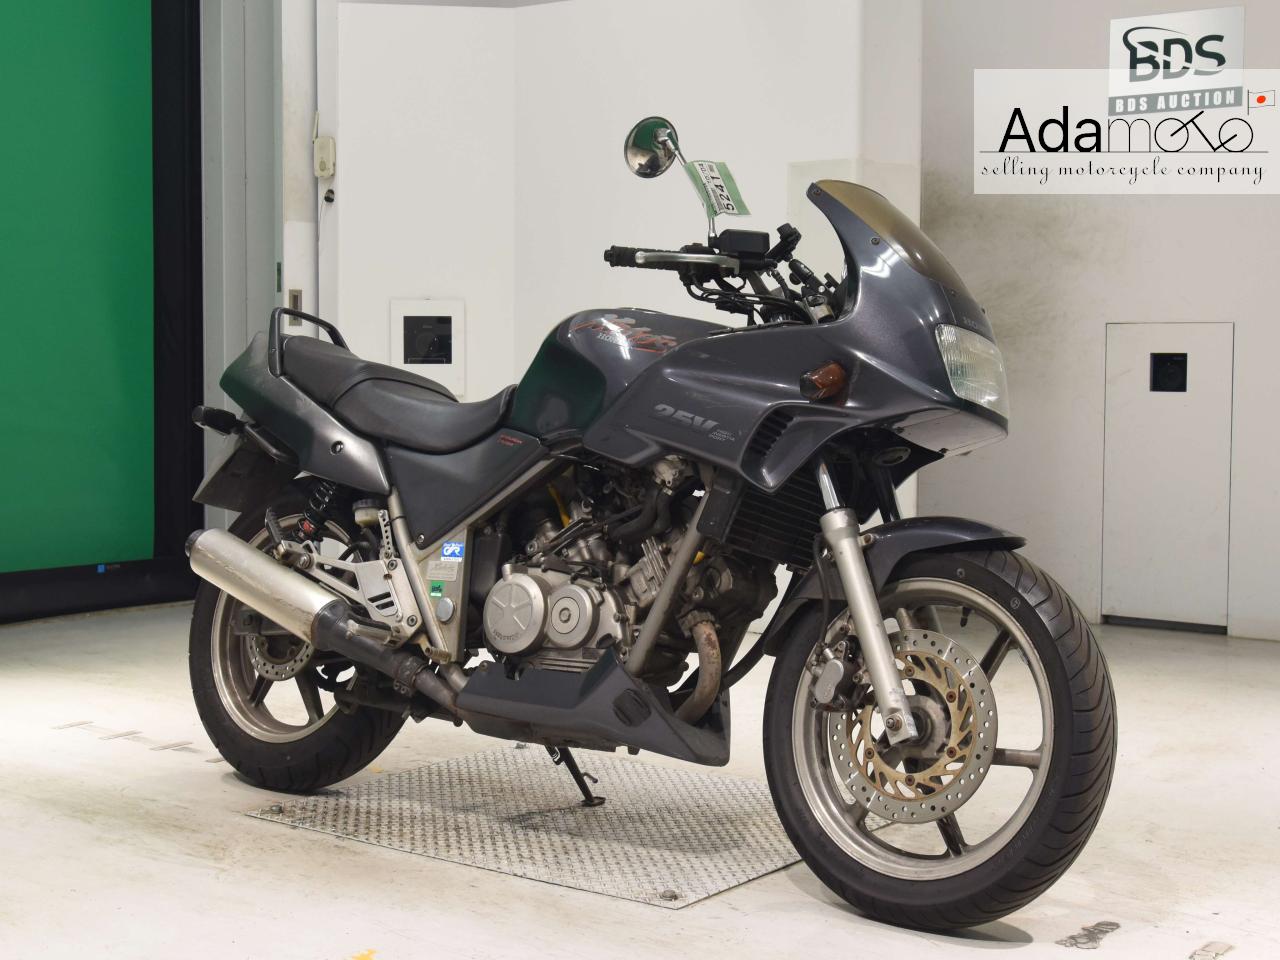 Honda XELVIS - Adamoto - Motorcycles from Japan